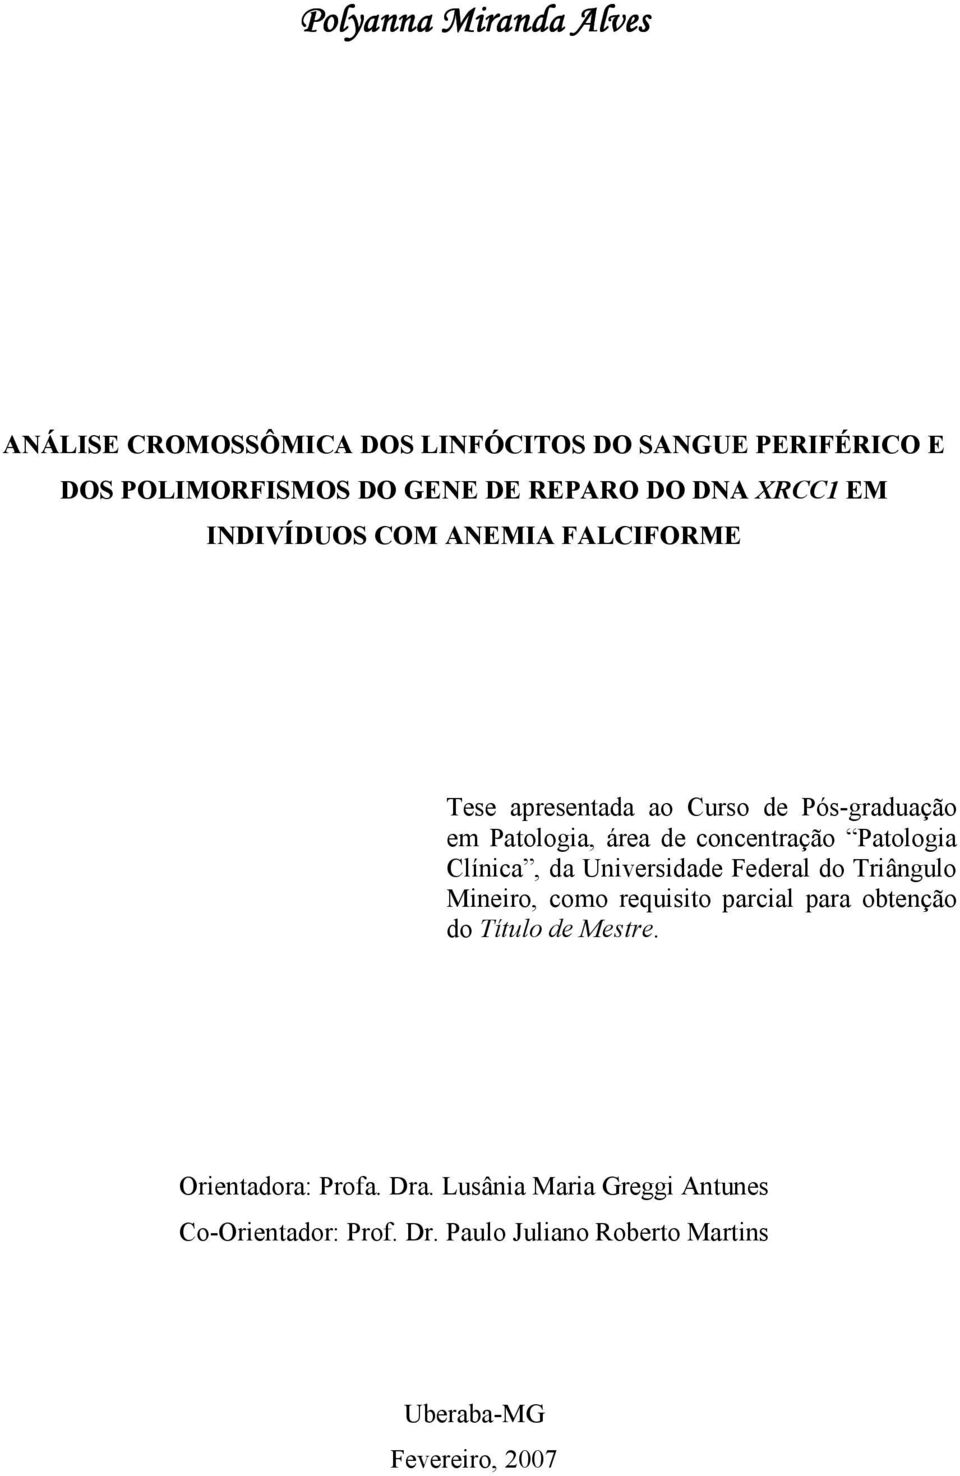 Patologia Clínica, da Universidade Federal do Triângulo Mineiro, como requisito parcial para obtenção do Título de Mestre.